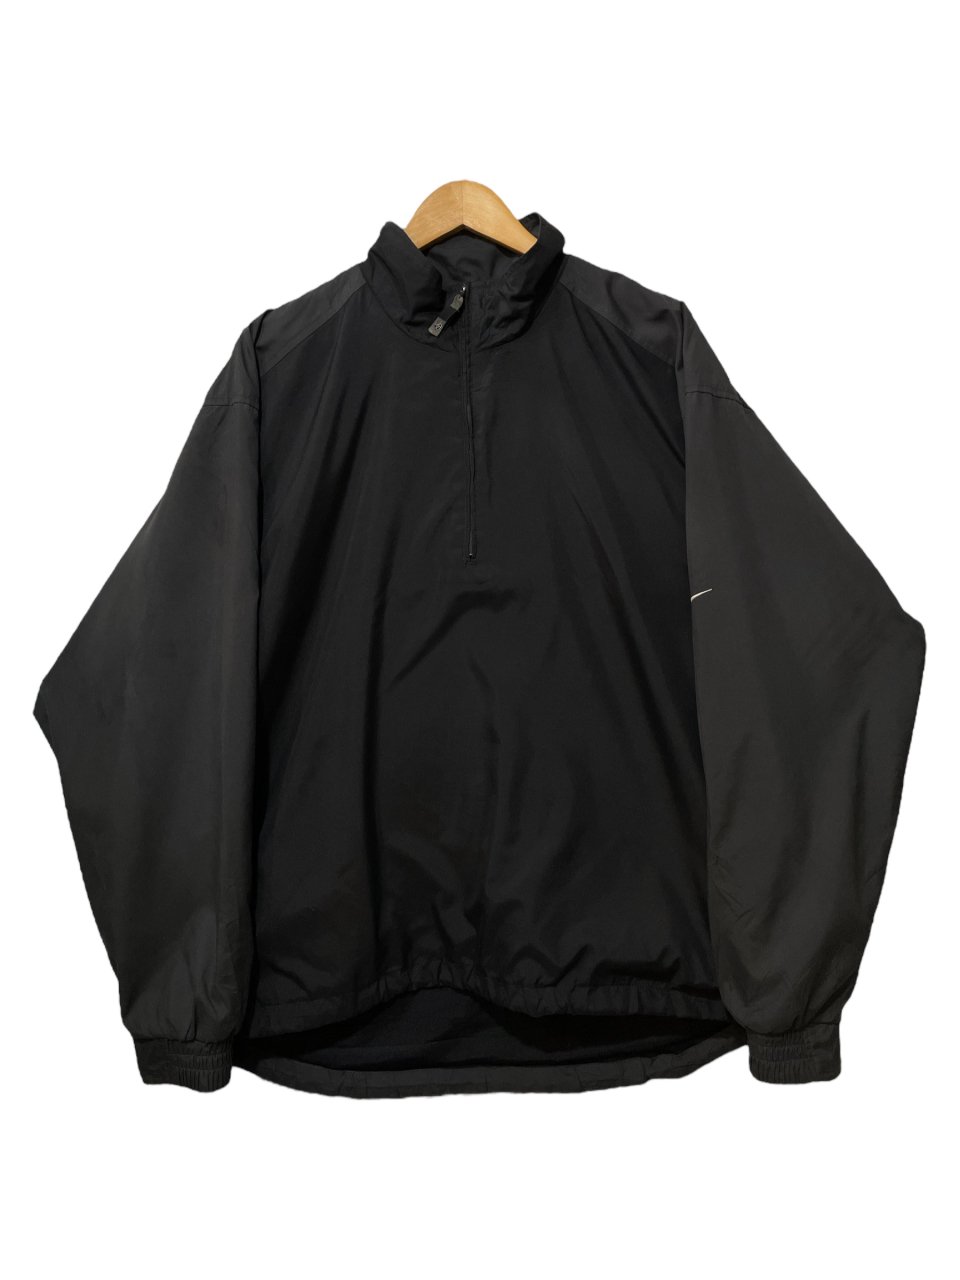 01年製 NIKE GOLF Half Zip Pullover Jacket 黒 M 00s ナイキ ゴルフ